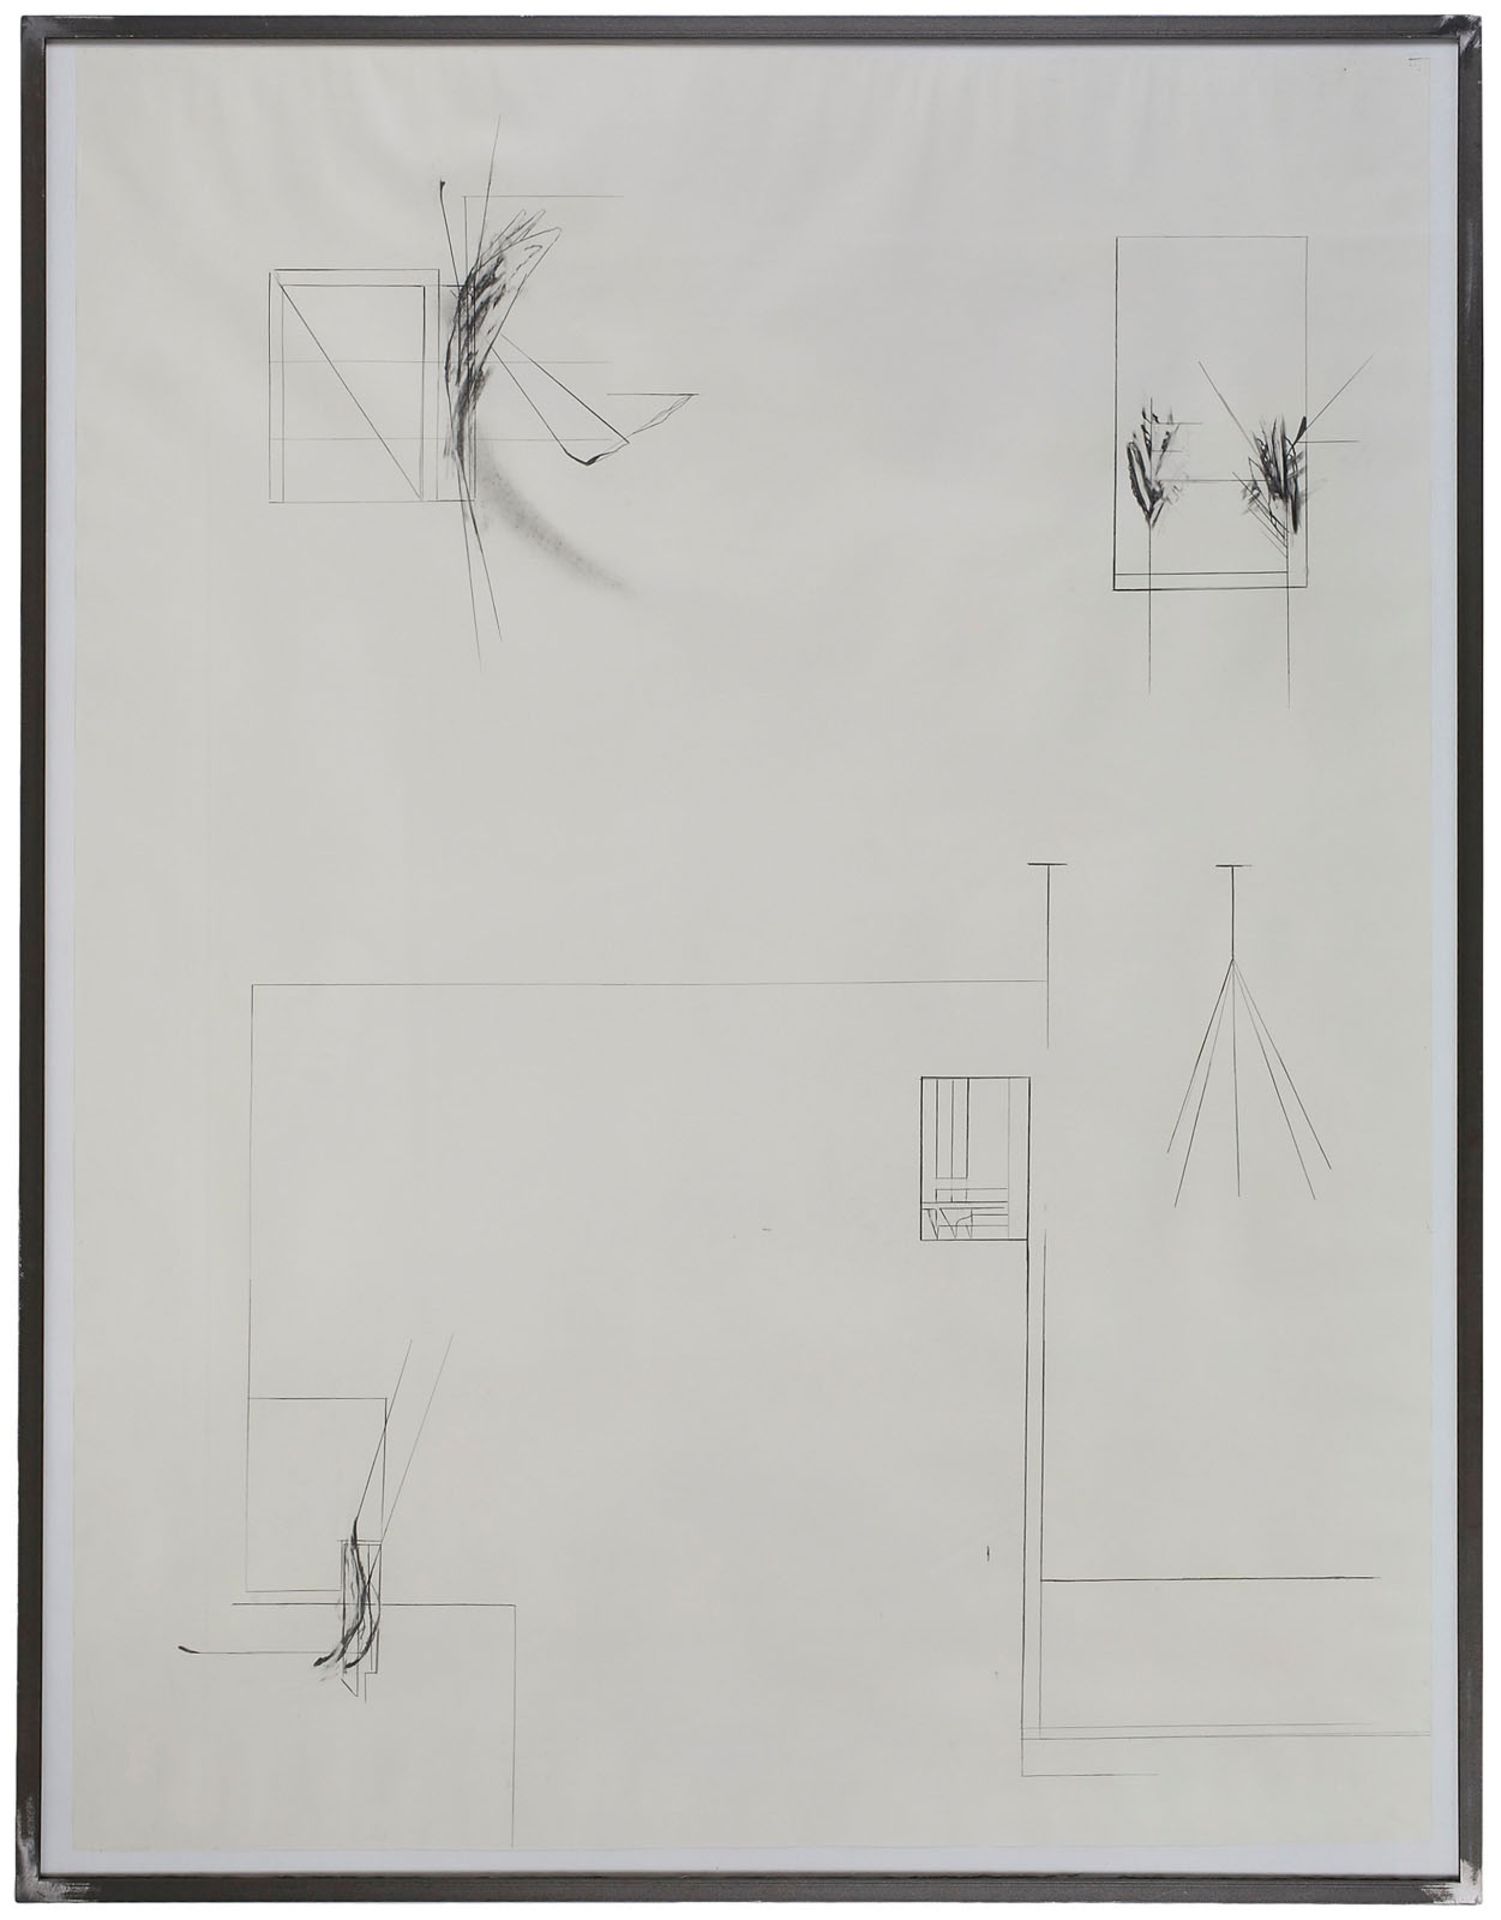 Tuschfederzeichnung auf PapierTobias Raphael Pils geb. 1971 Linz "o.T." 1995 154 x 110 cm, gerahmt